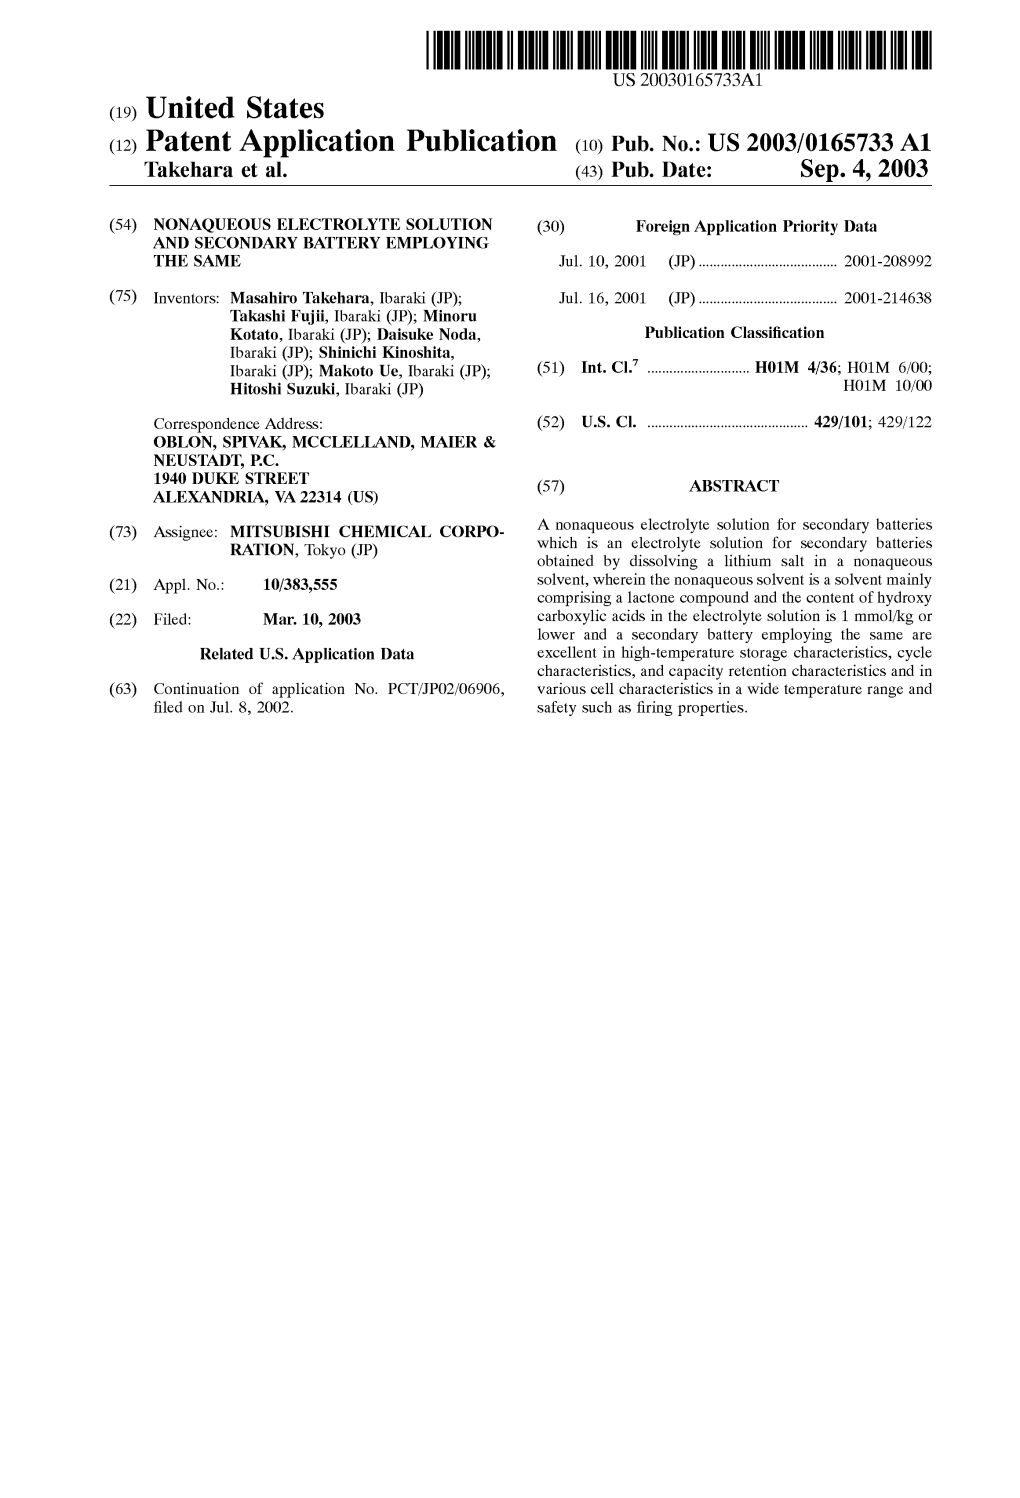 (12) Patent Application Publication (10) Pub. No.: US 2003/0165733 A1 Takehara Et Al